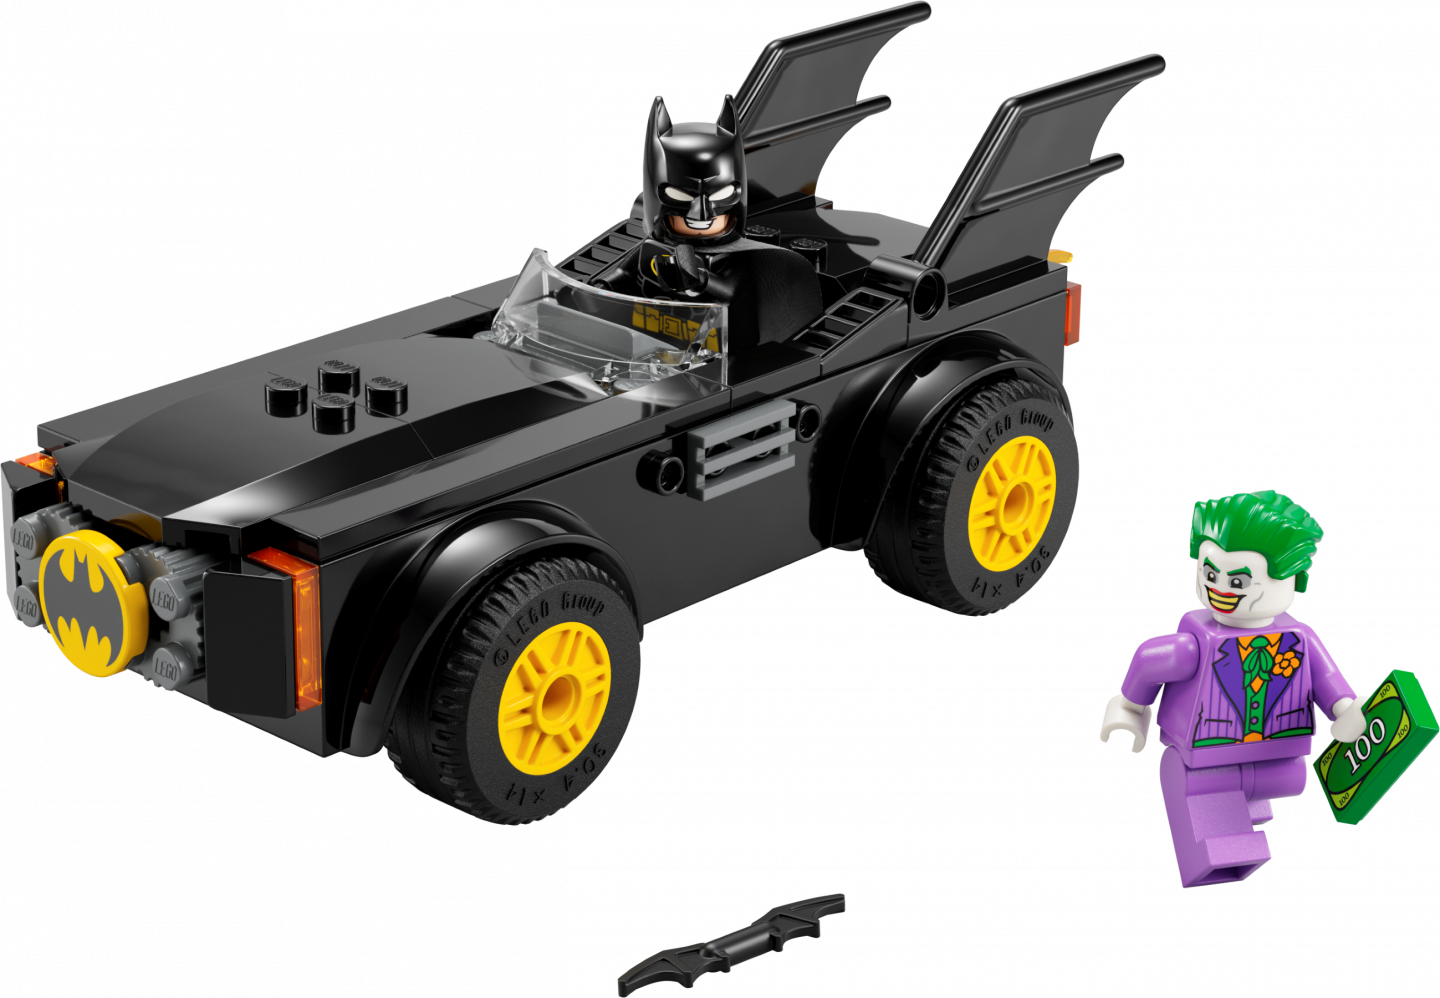 Batmobile™ achtervolging: Batman™ vs. The Joker™